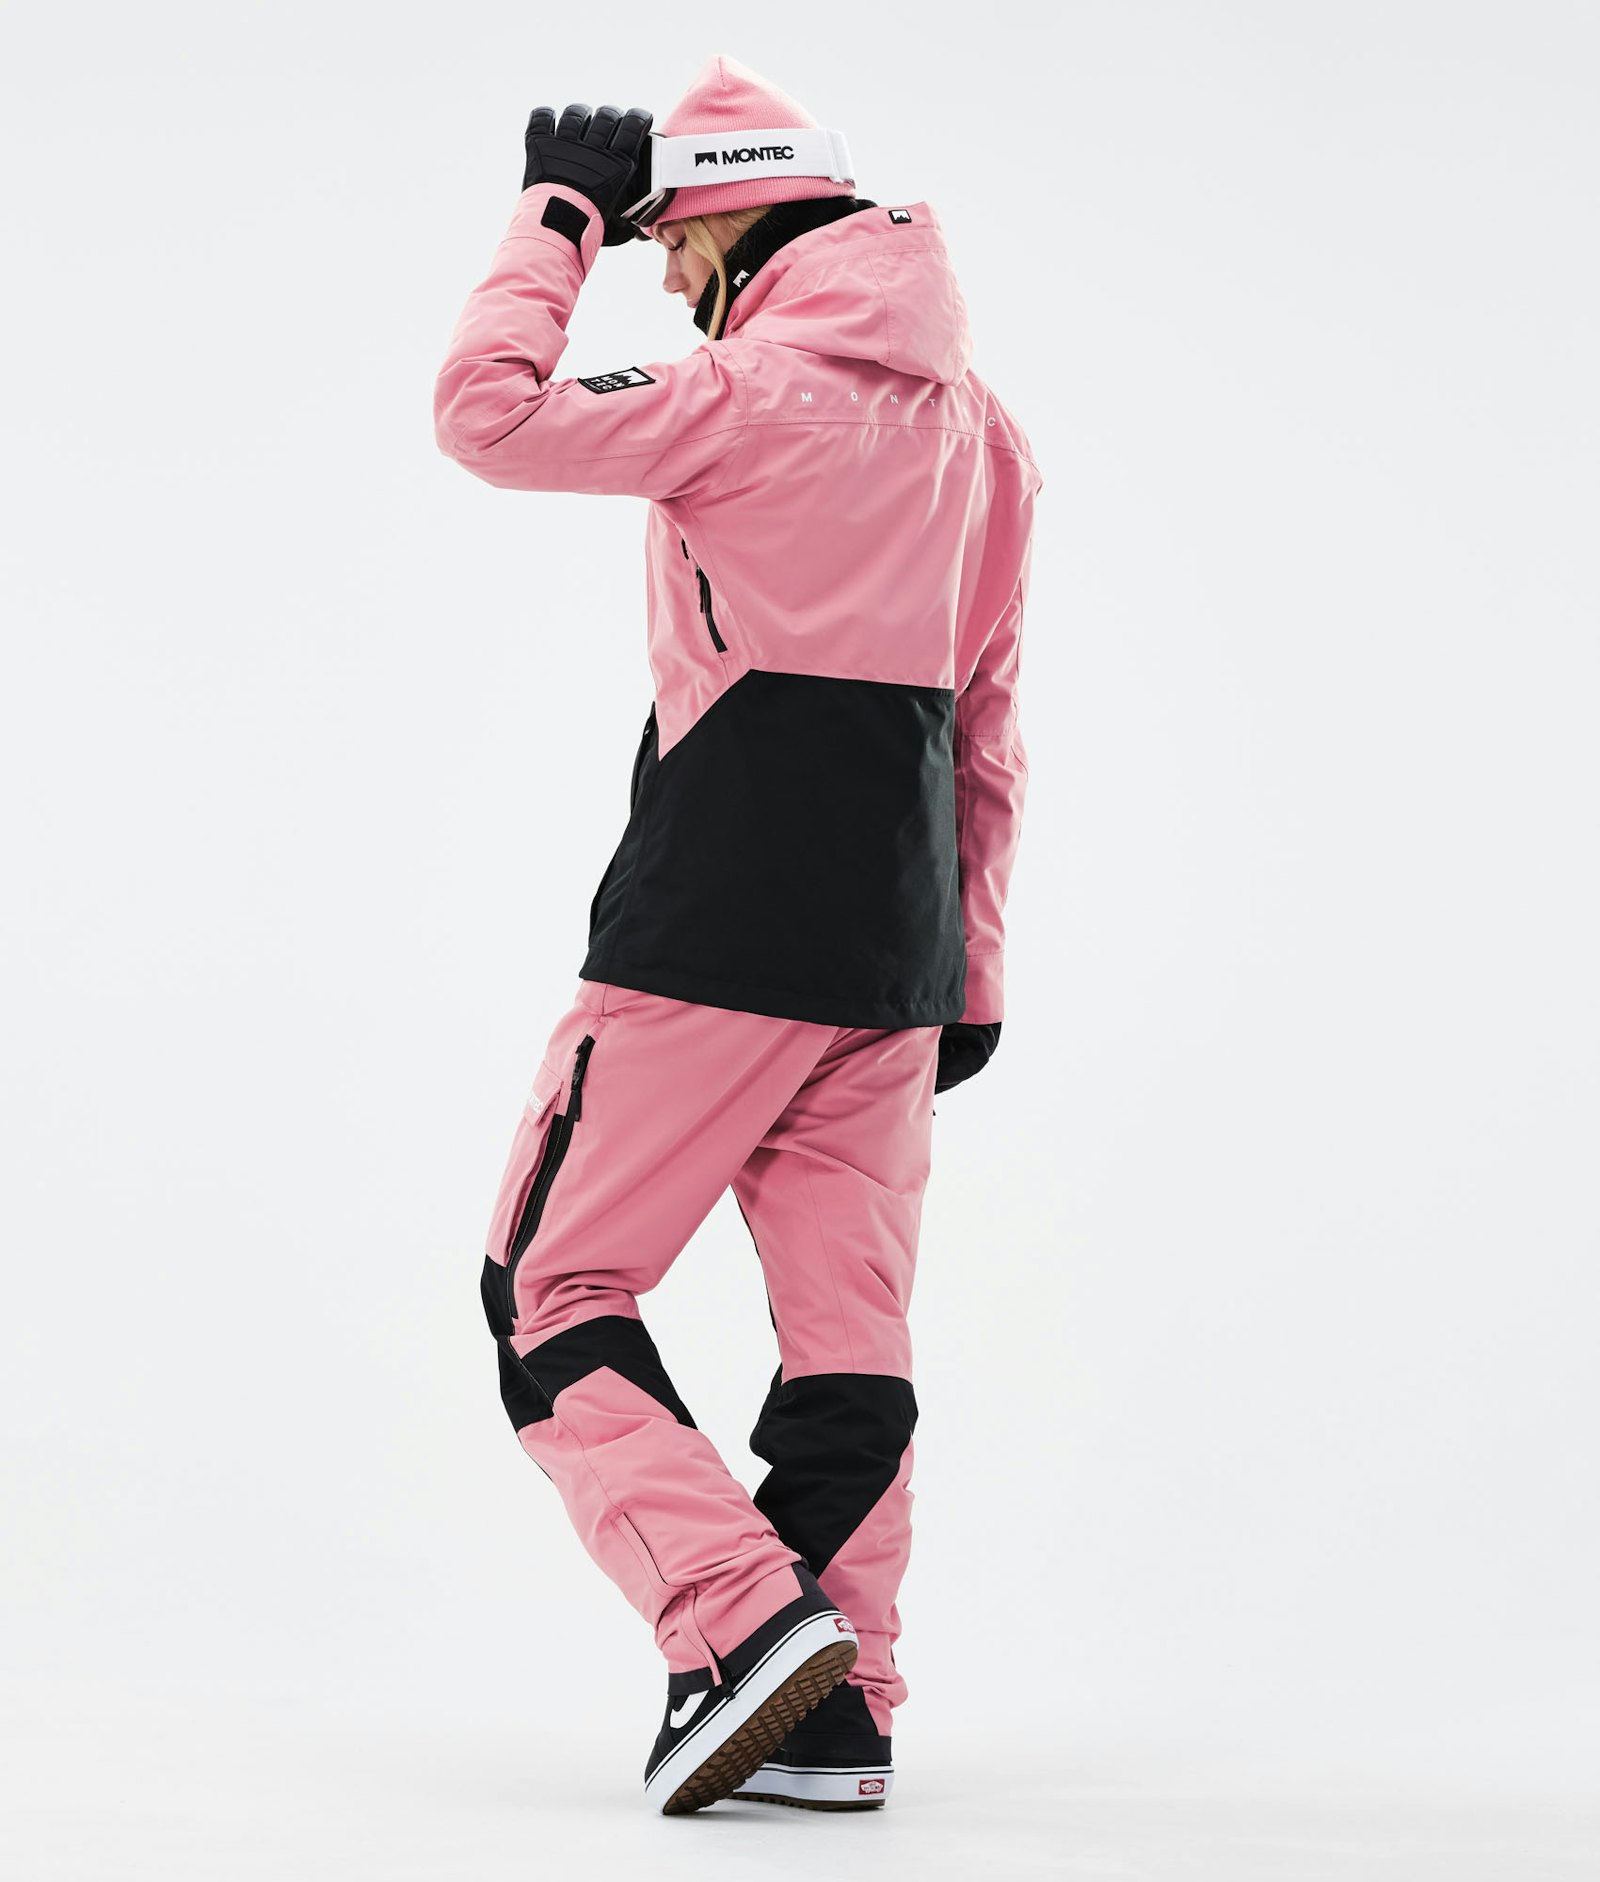 Moss W 2021 Snowboard Jacket Women Pink/Black Renewed